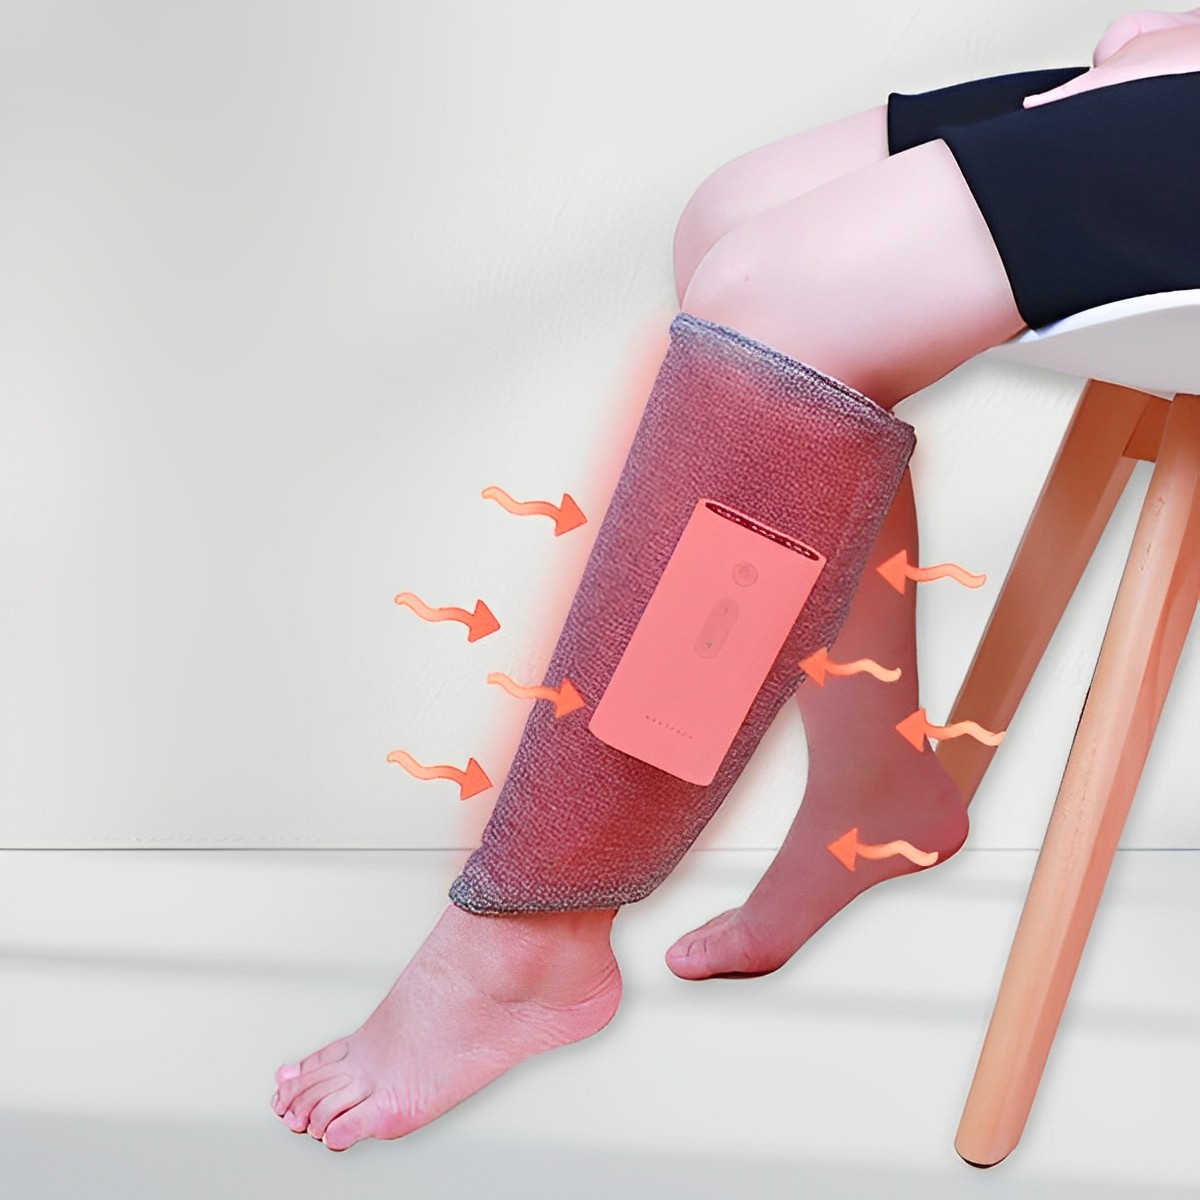 Máy massage bắp chân ,tay ,đùi giúp lưu thông khí huyết giảm đau mỏi tê bì, máy mát xa giúp thon gọn đùi bắp chân